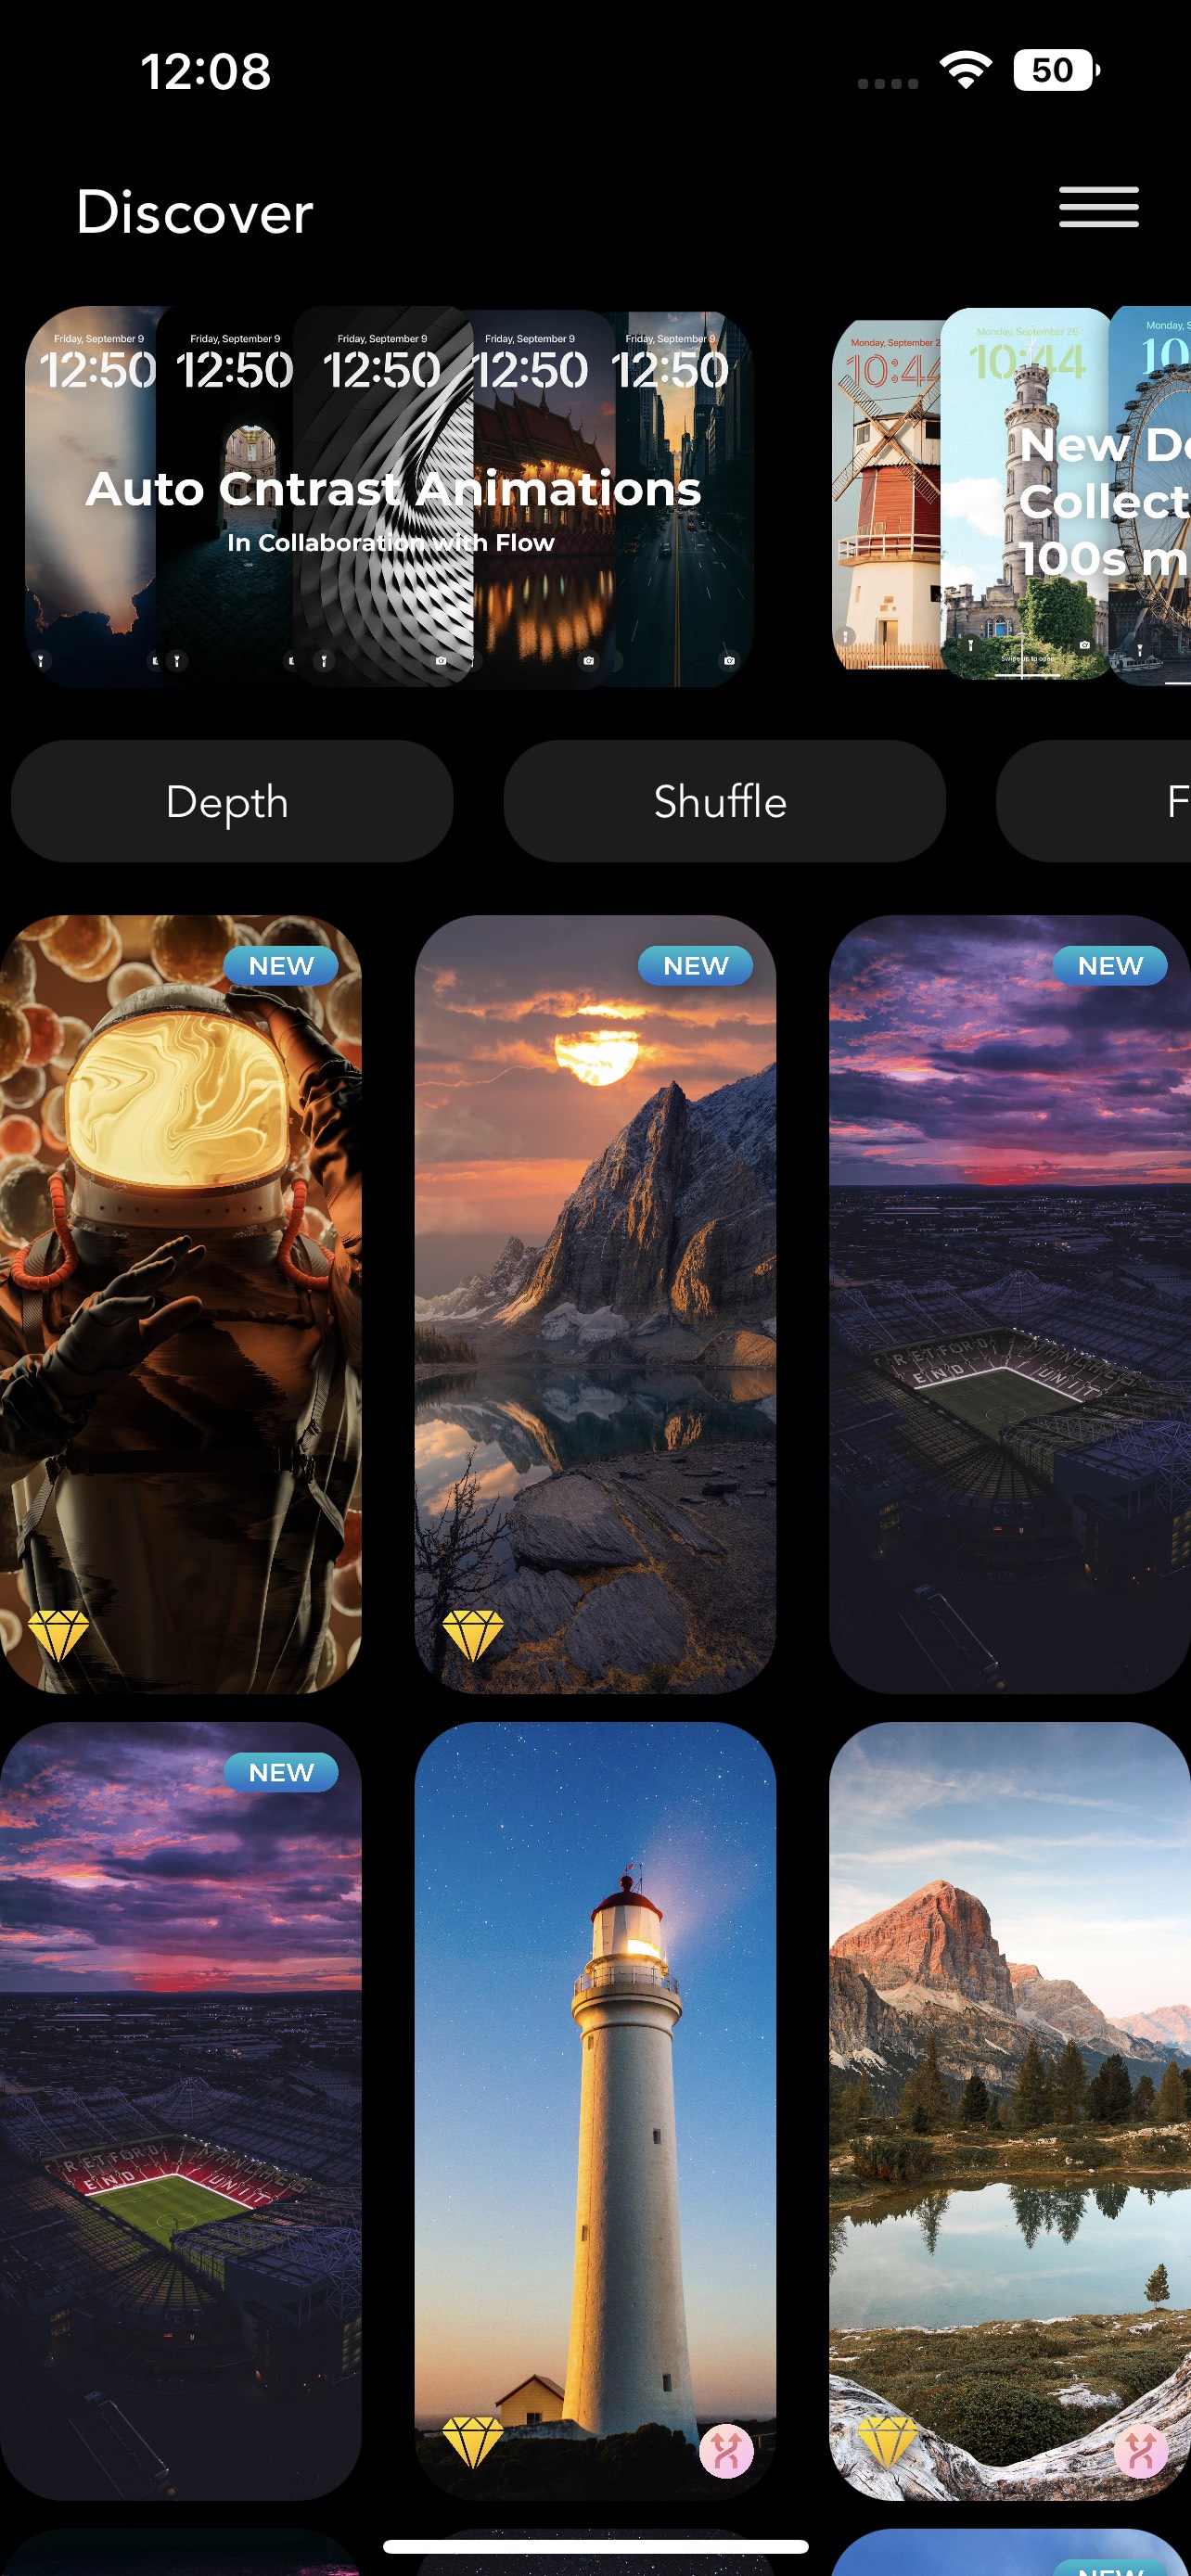 4 ứng dụng hình nền đẹp nhất cho màn hình khoá iOS 16